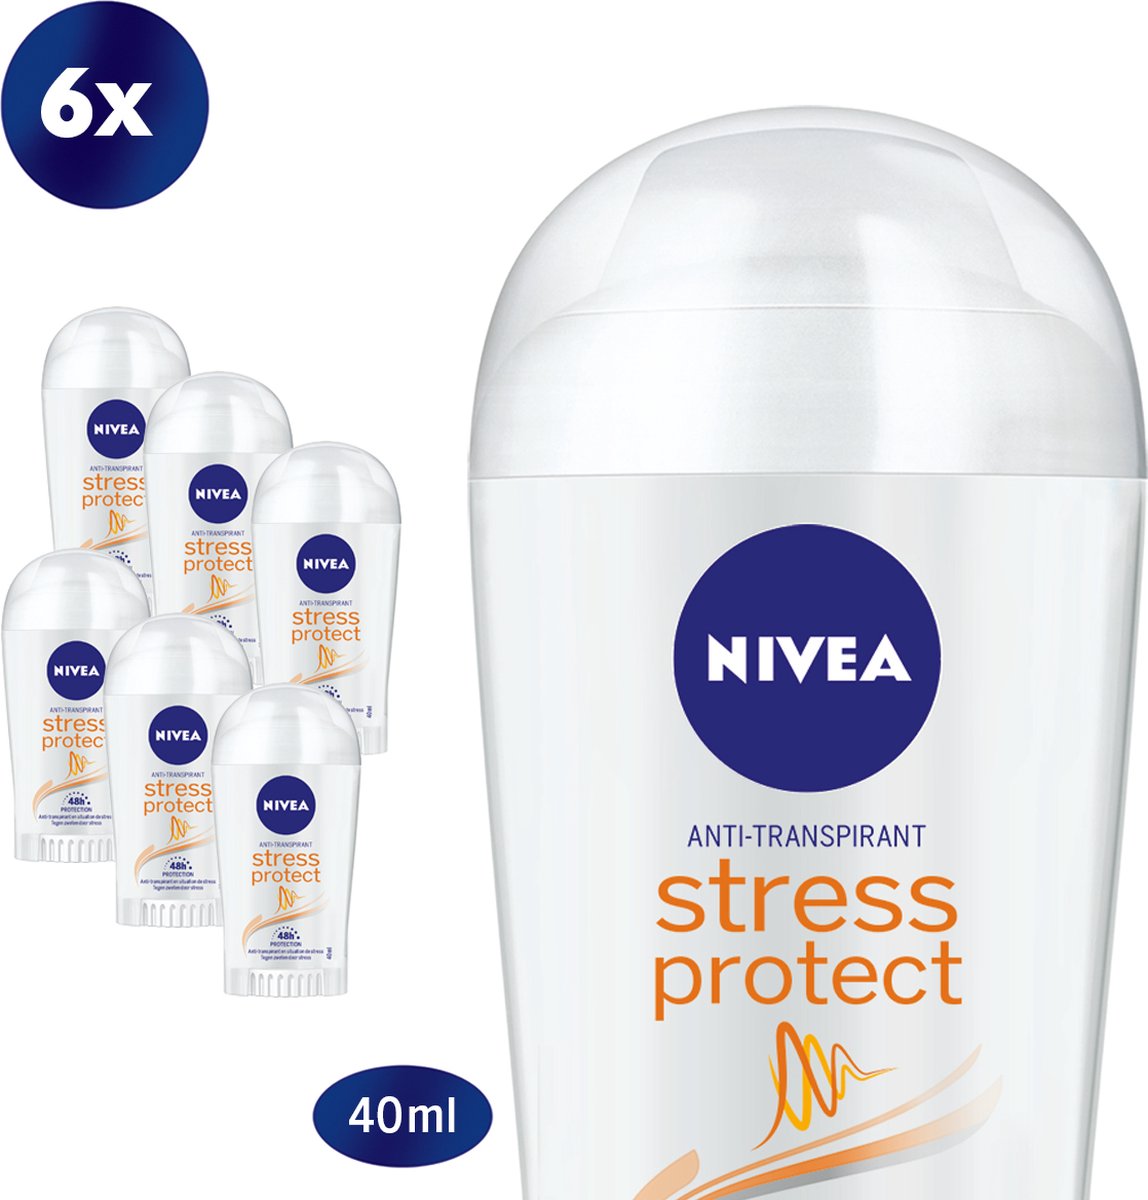 NIVEA Stress Protect - 6 x 40 ml - Voordeelverpakking - Deodorant Stick - NIVEA